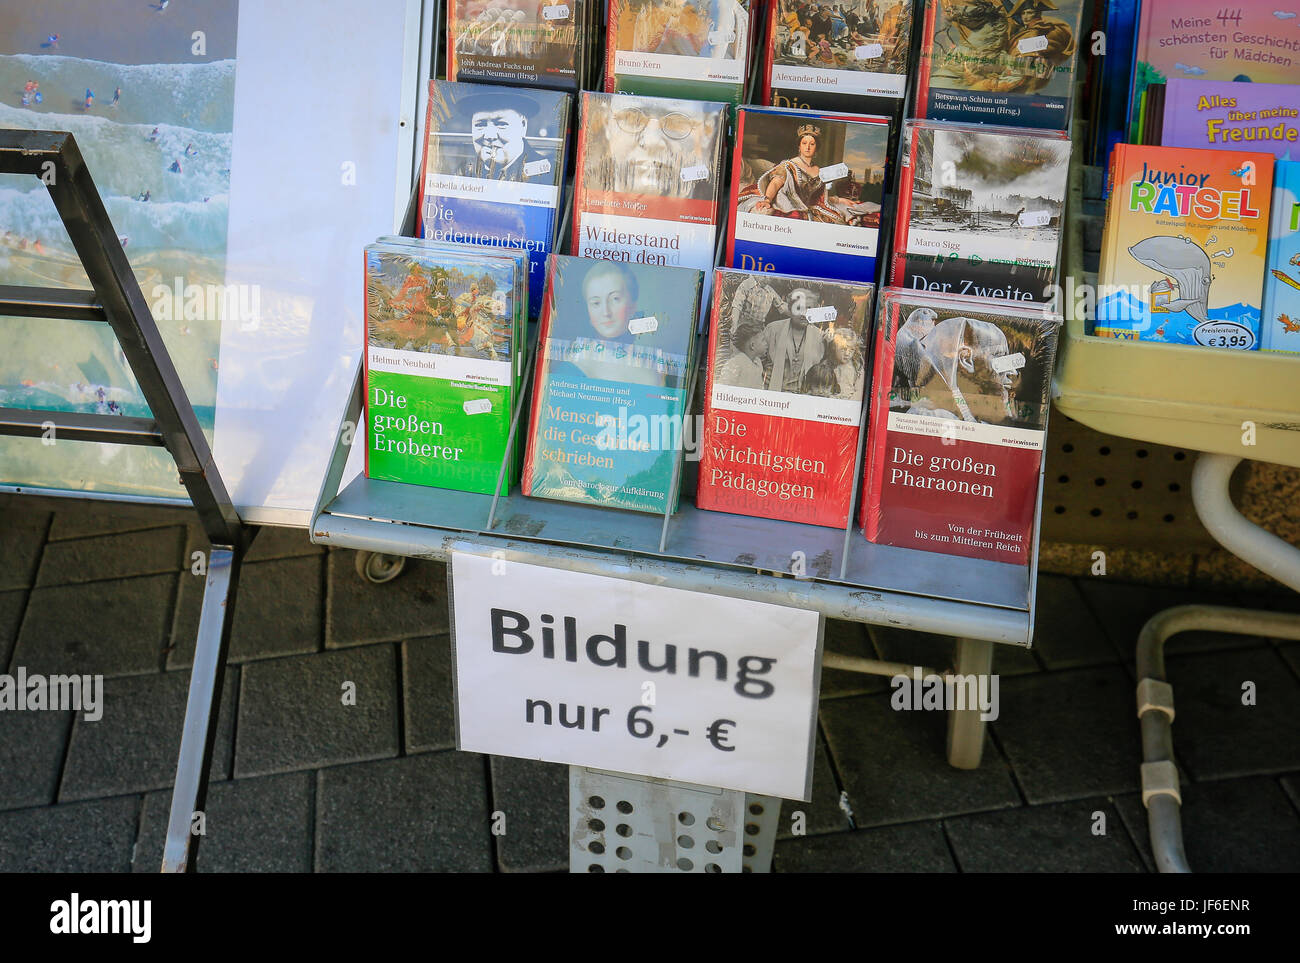 Bildung nur 6 Euro, Buchhandlung in Trier, Rheinland-Pfalz, Deutschland, Europa, Bildung Nur 6 Euro, holte in Trier, Rheinland-Pfalz, English Stockfoto